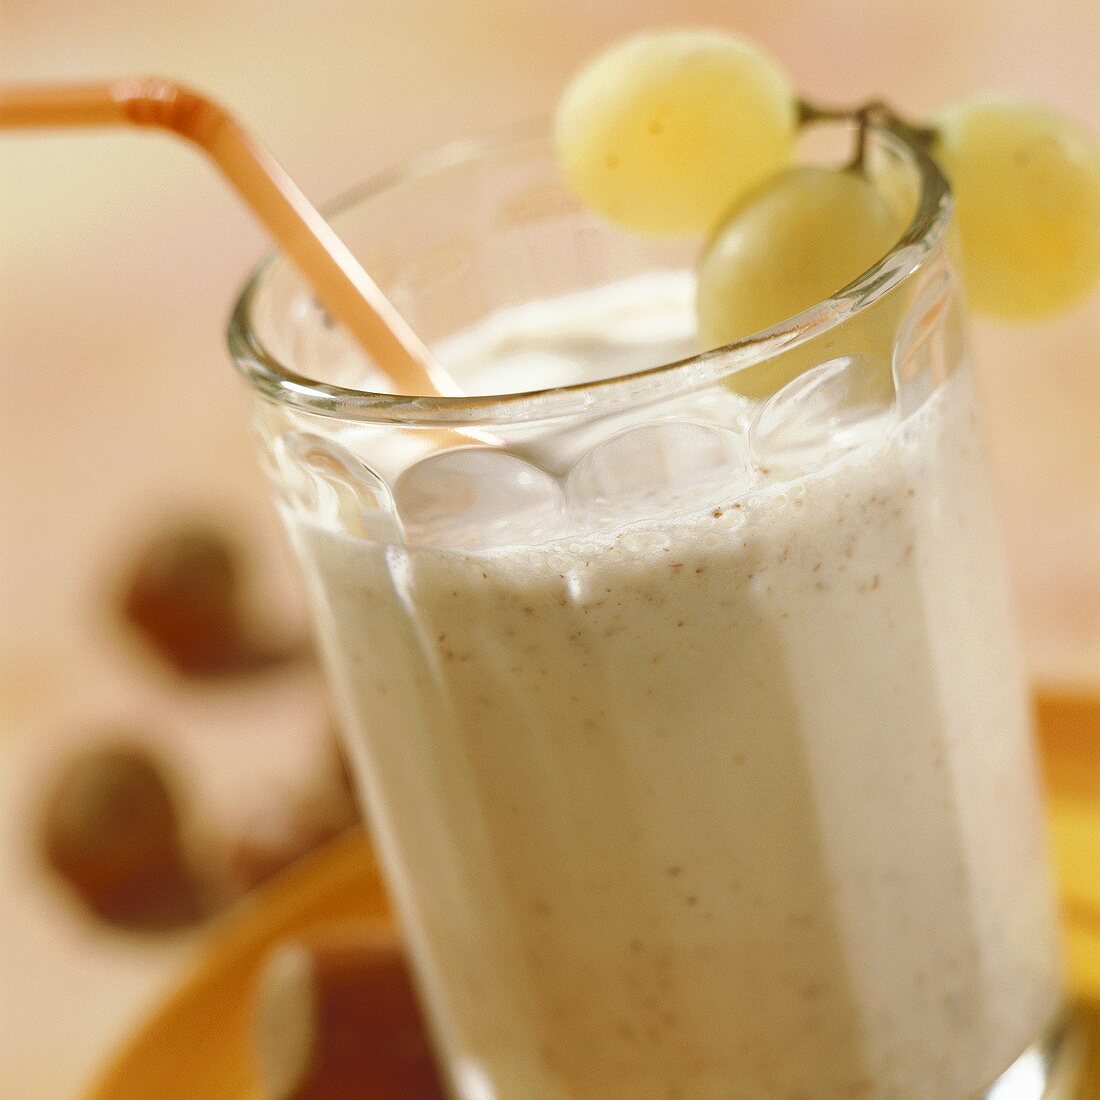 Hazelnut-flavoured milk in glass with straw